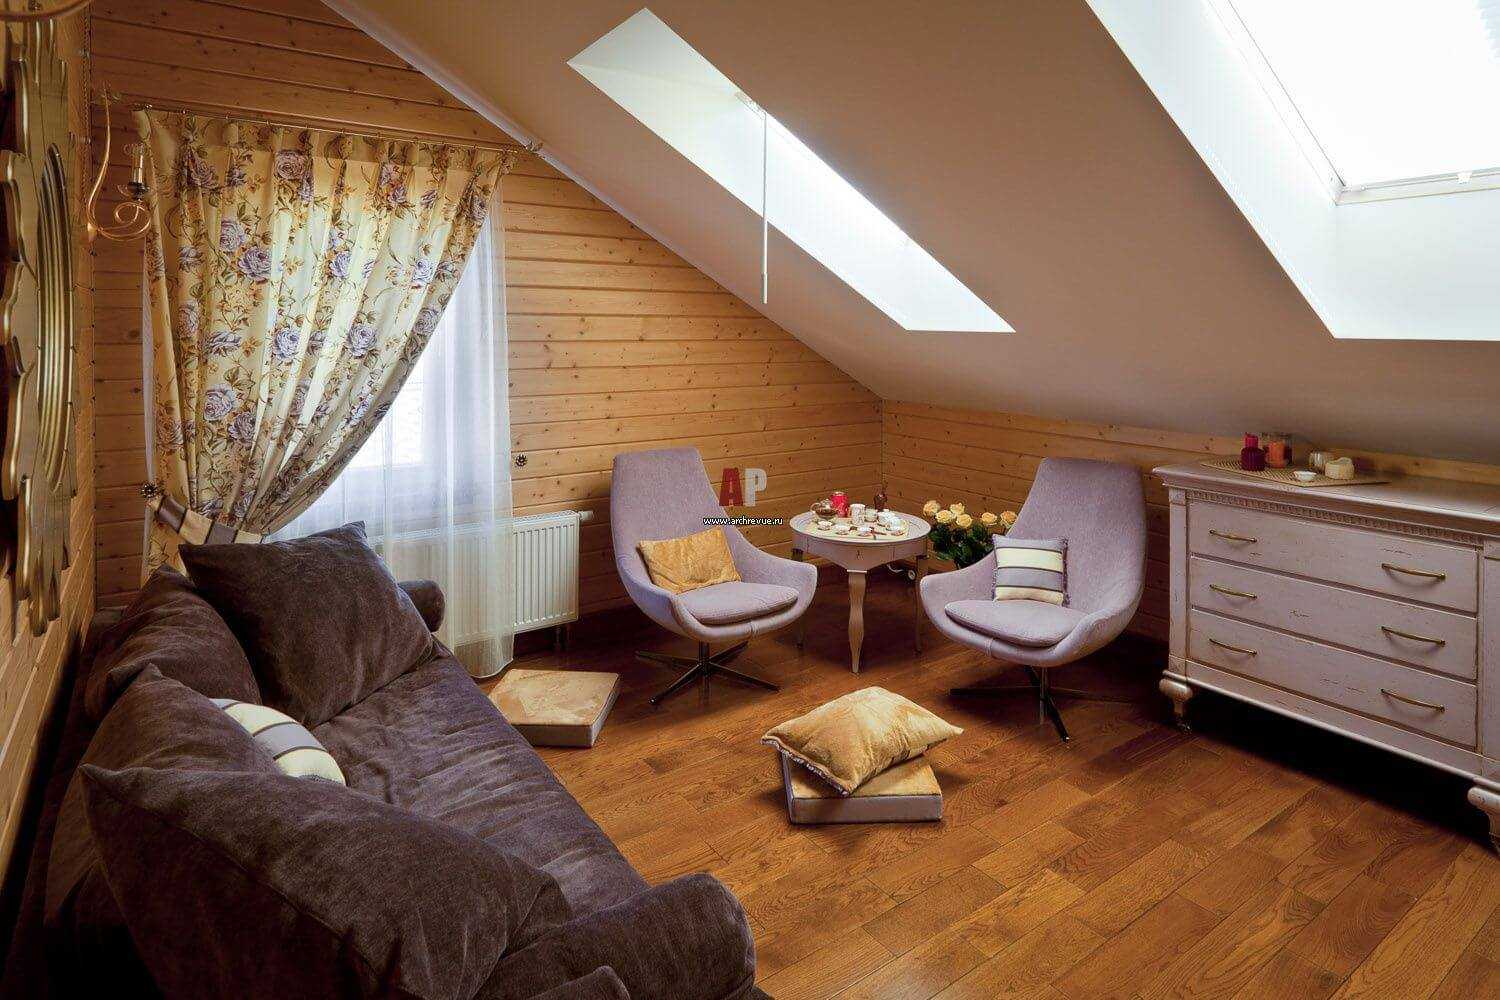 Дизайн мансардного этажа (208 фото): варианты интерьера мансарды в деревянном частном доме, оформление на мансардном этаже